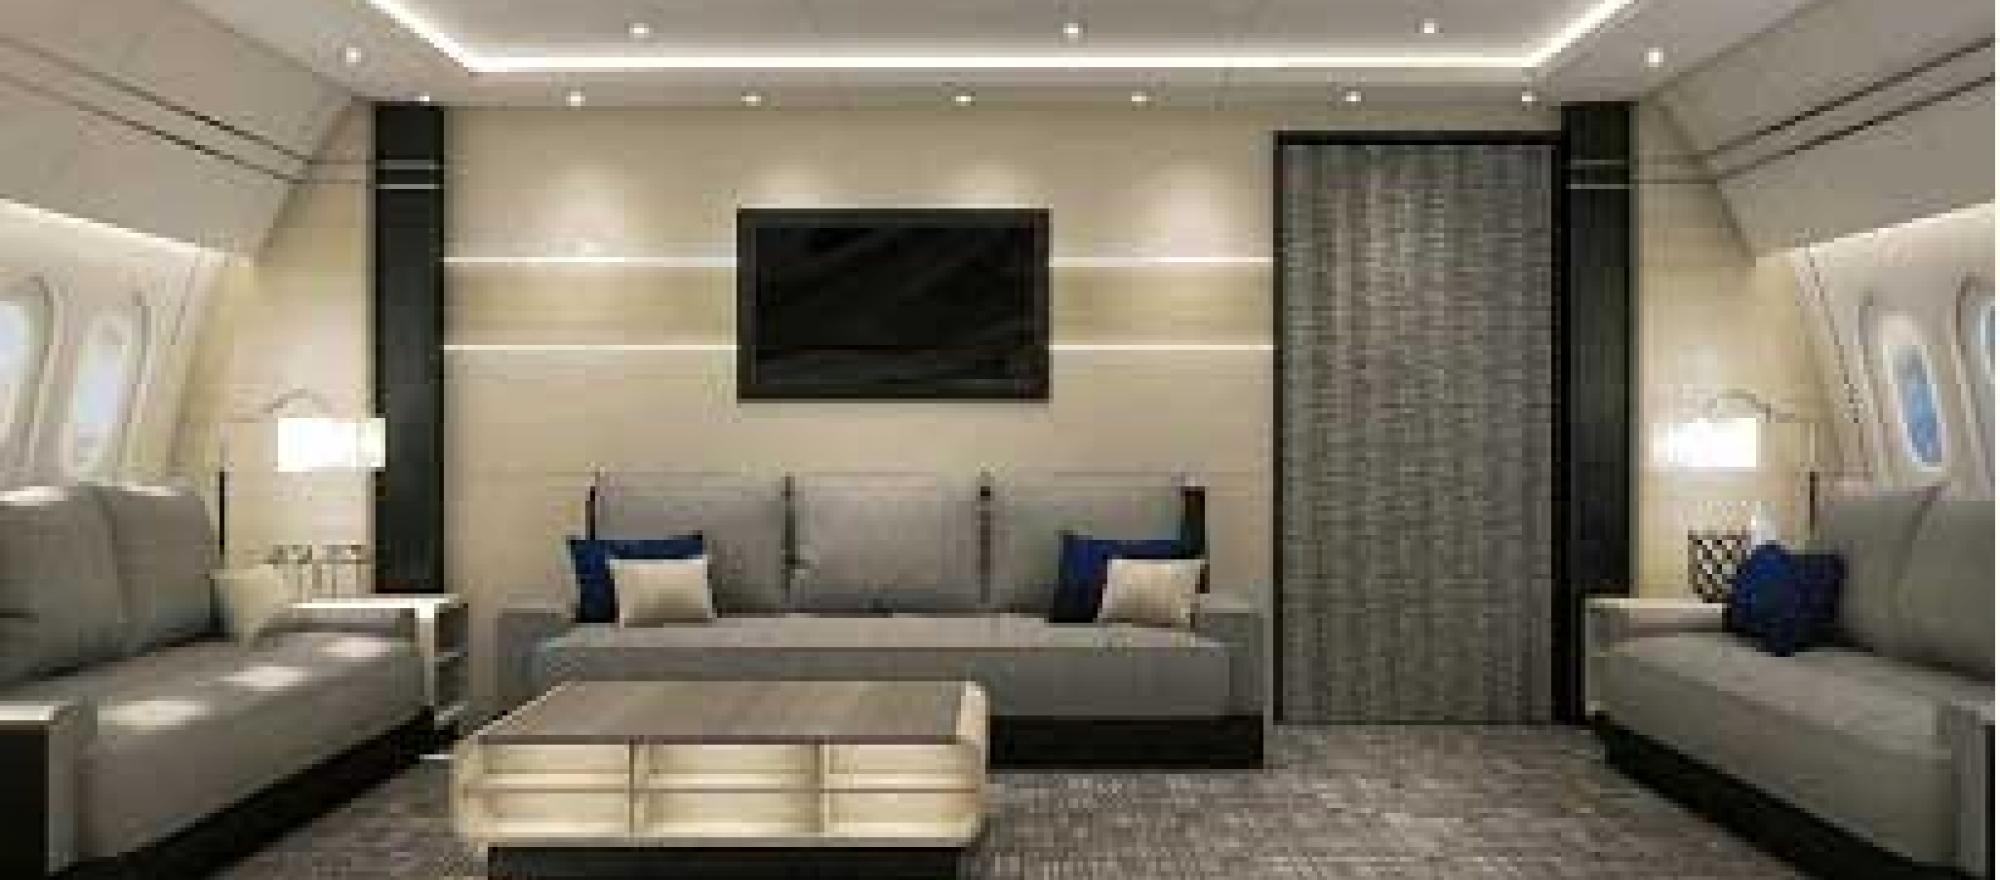 787 interior design concept